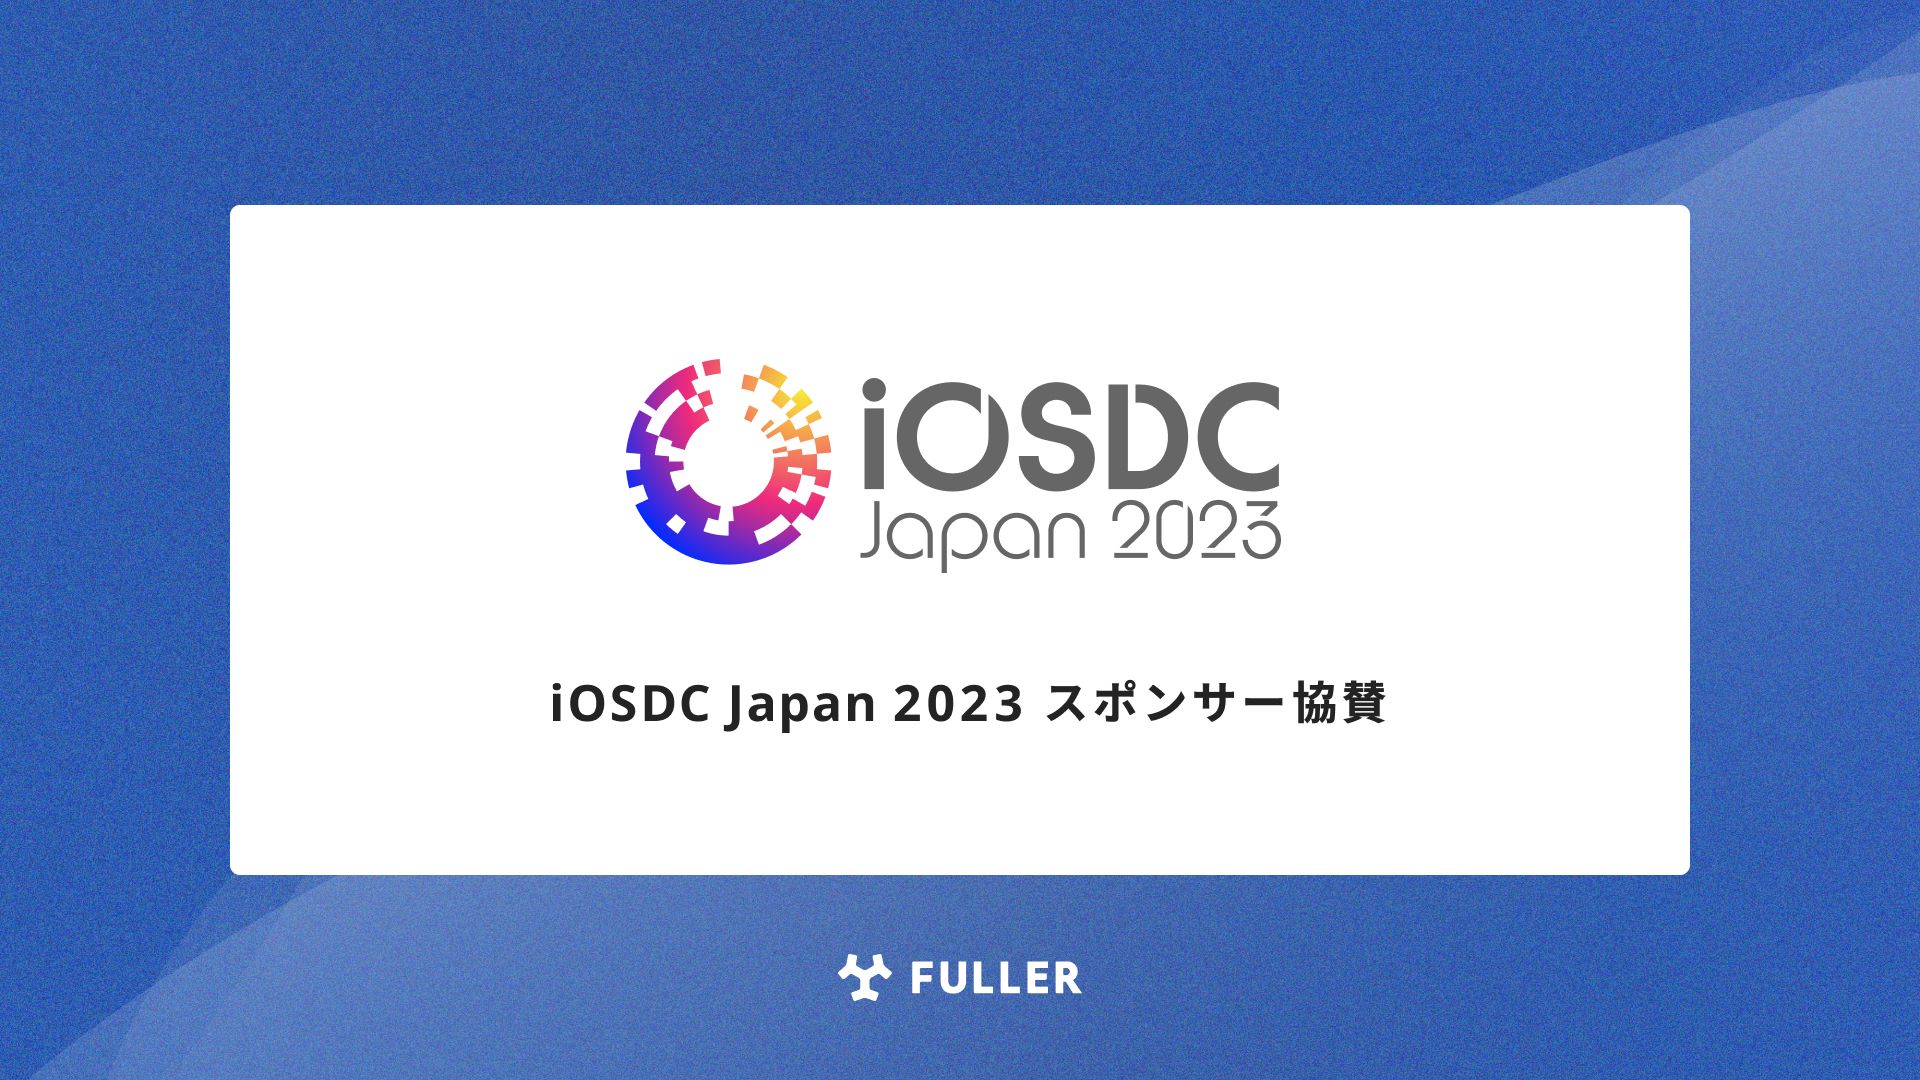 フラー、iOSDC Japan 2023にスポンサー協賛